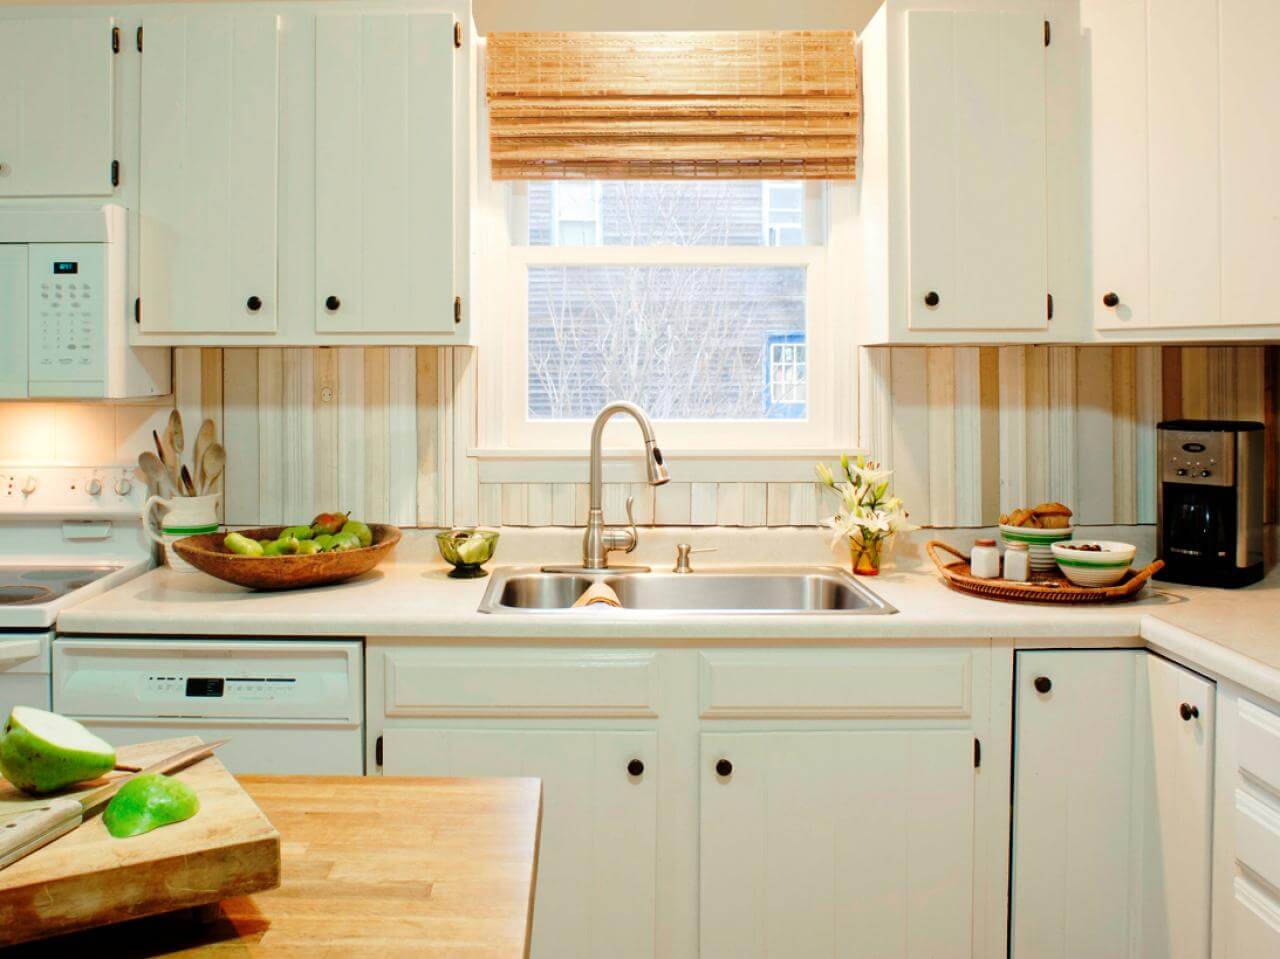 Nice white kitchen cabinet